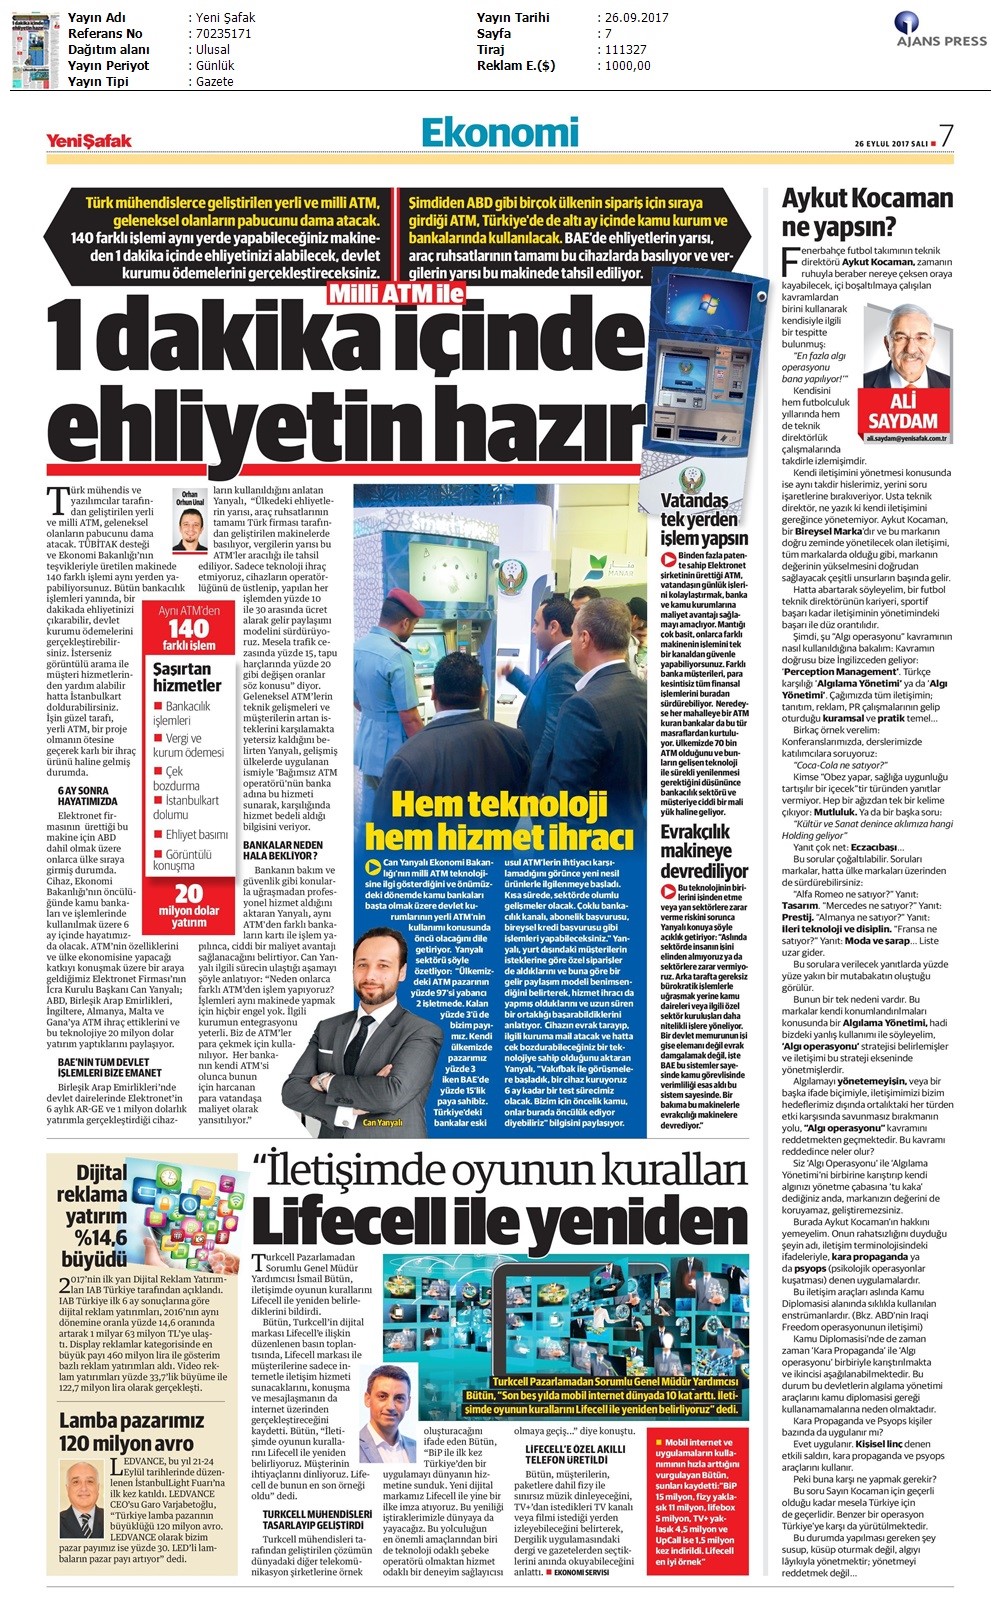 Altınmatik Yeni Şafak Gazetesi 26.09.2017